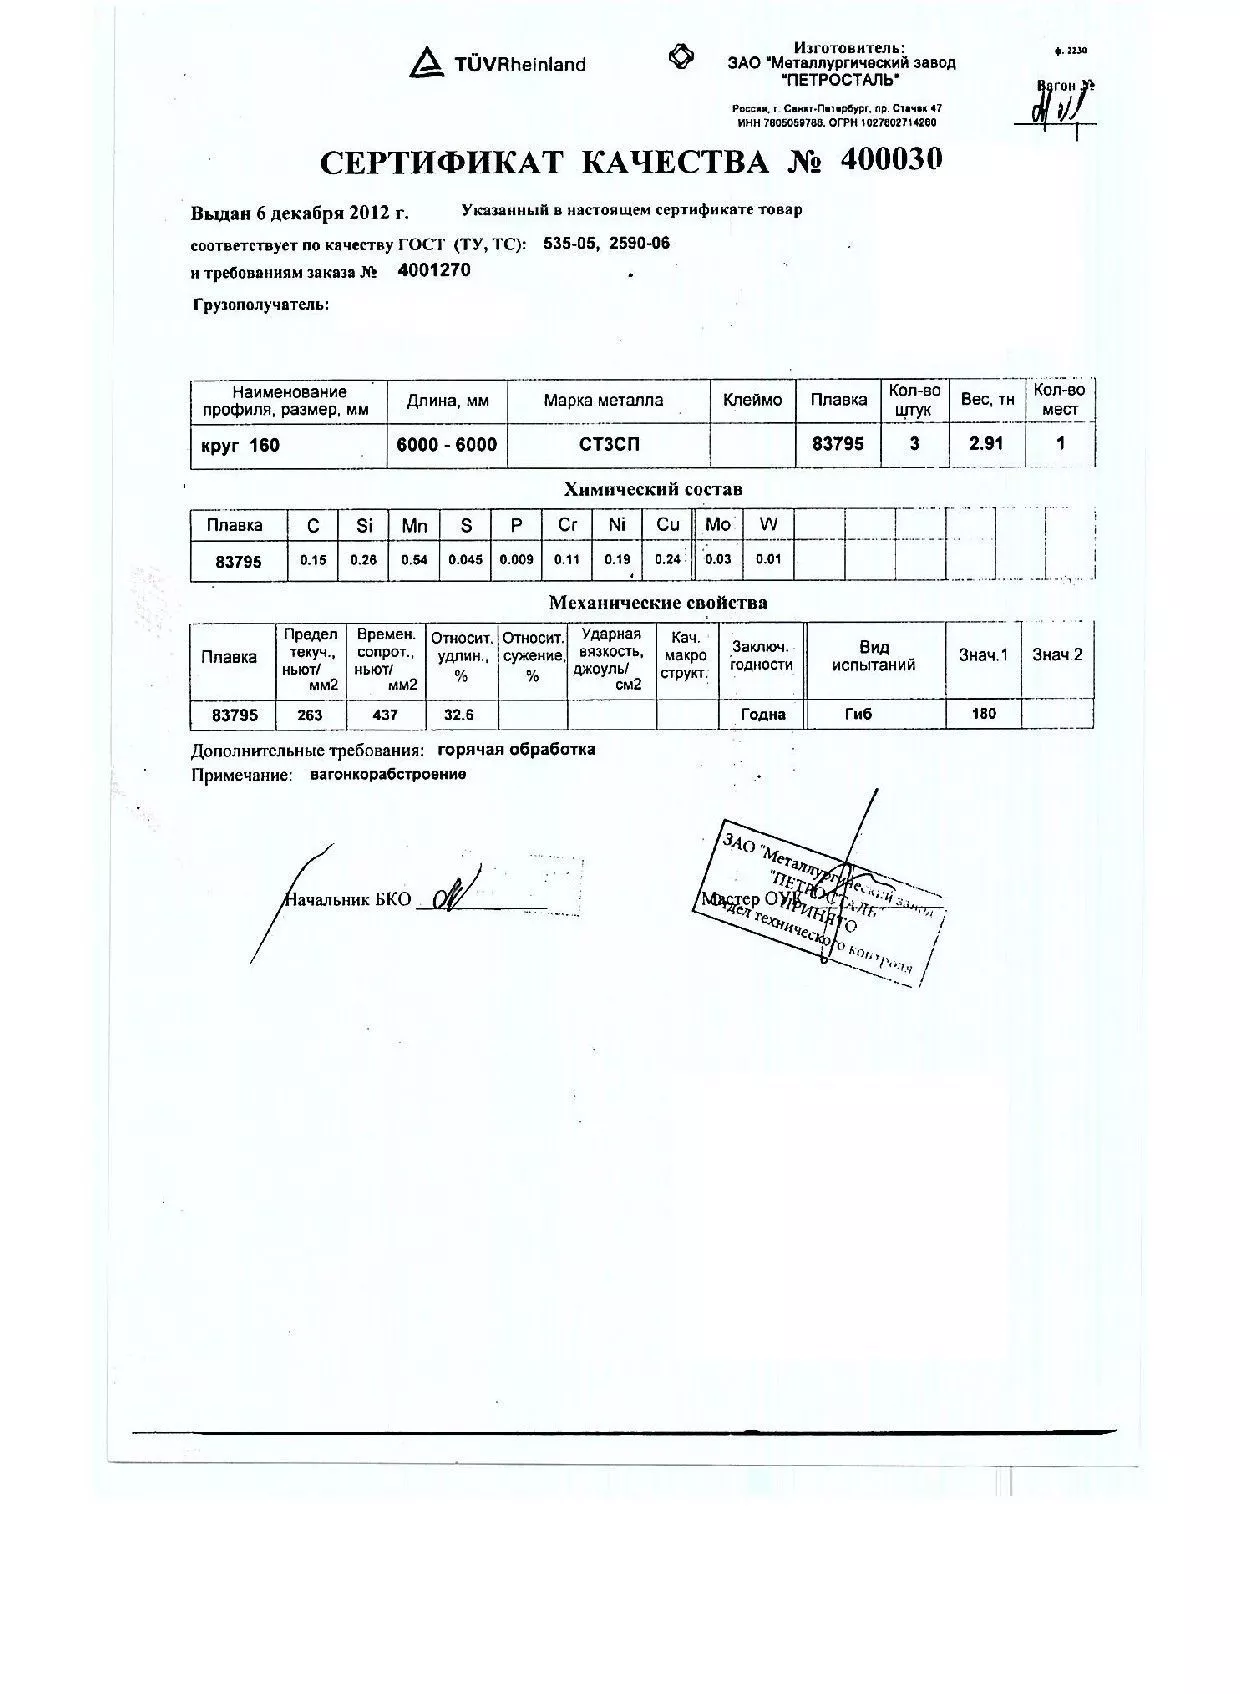 Сертификат на круг горячекатаный 160 ст.3пс от 2012-12